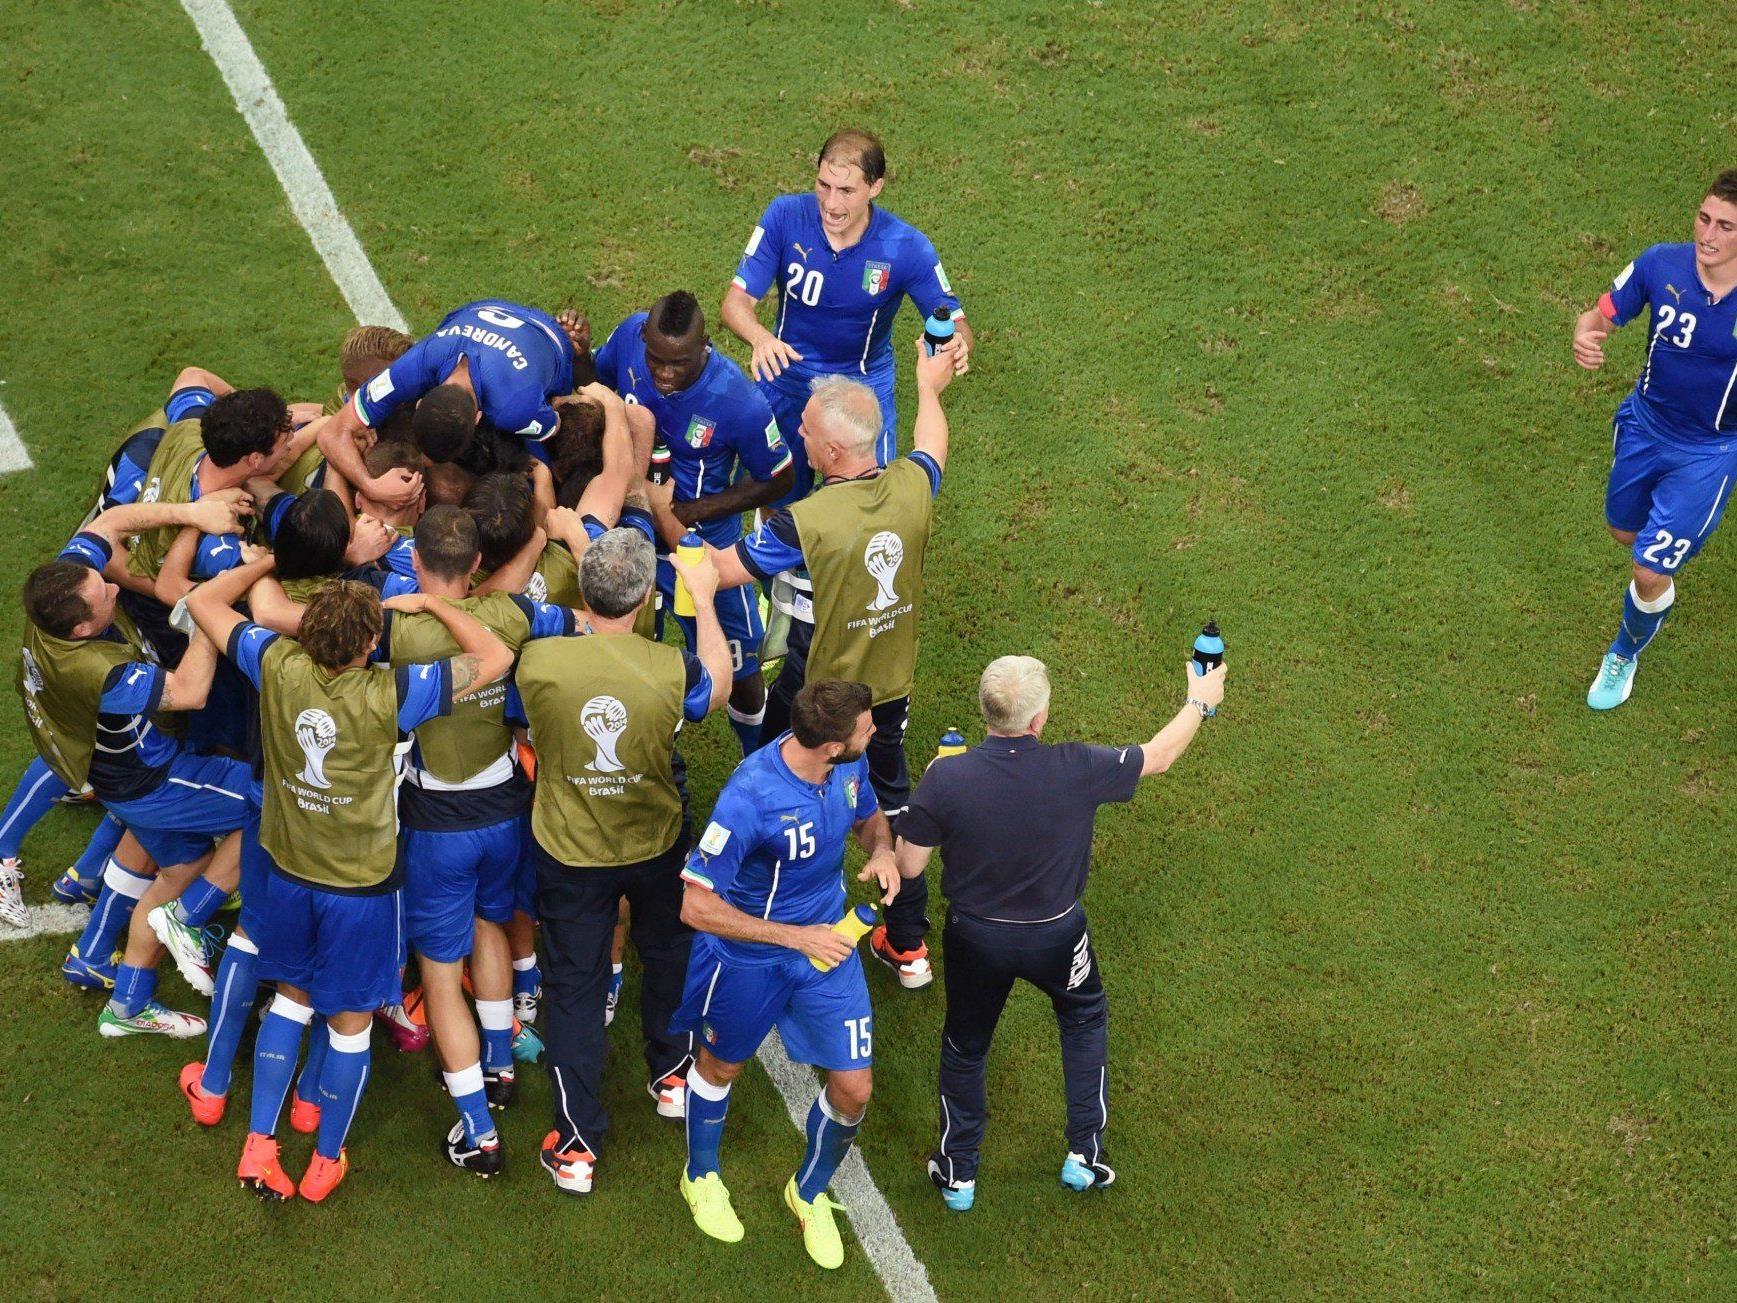 Italien setzt sich im Topspiel des 3. Tages in der Gruppe D gegen England mit 2:1 durch.